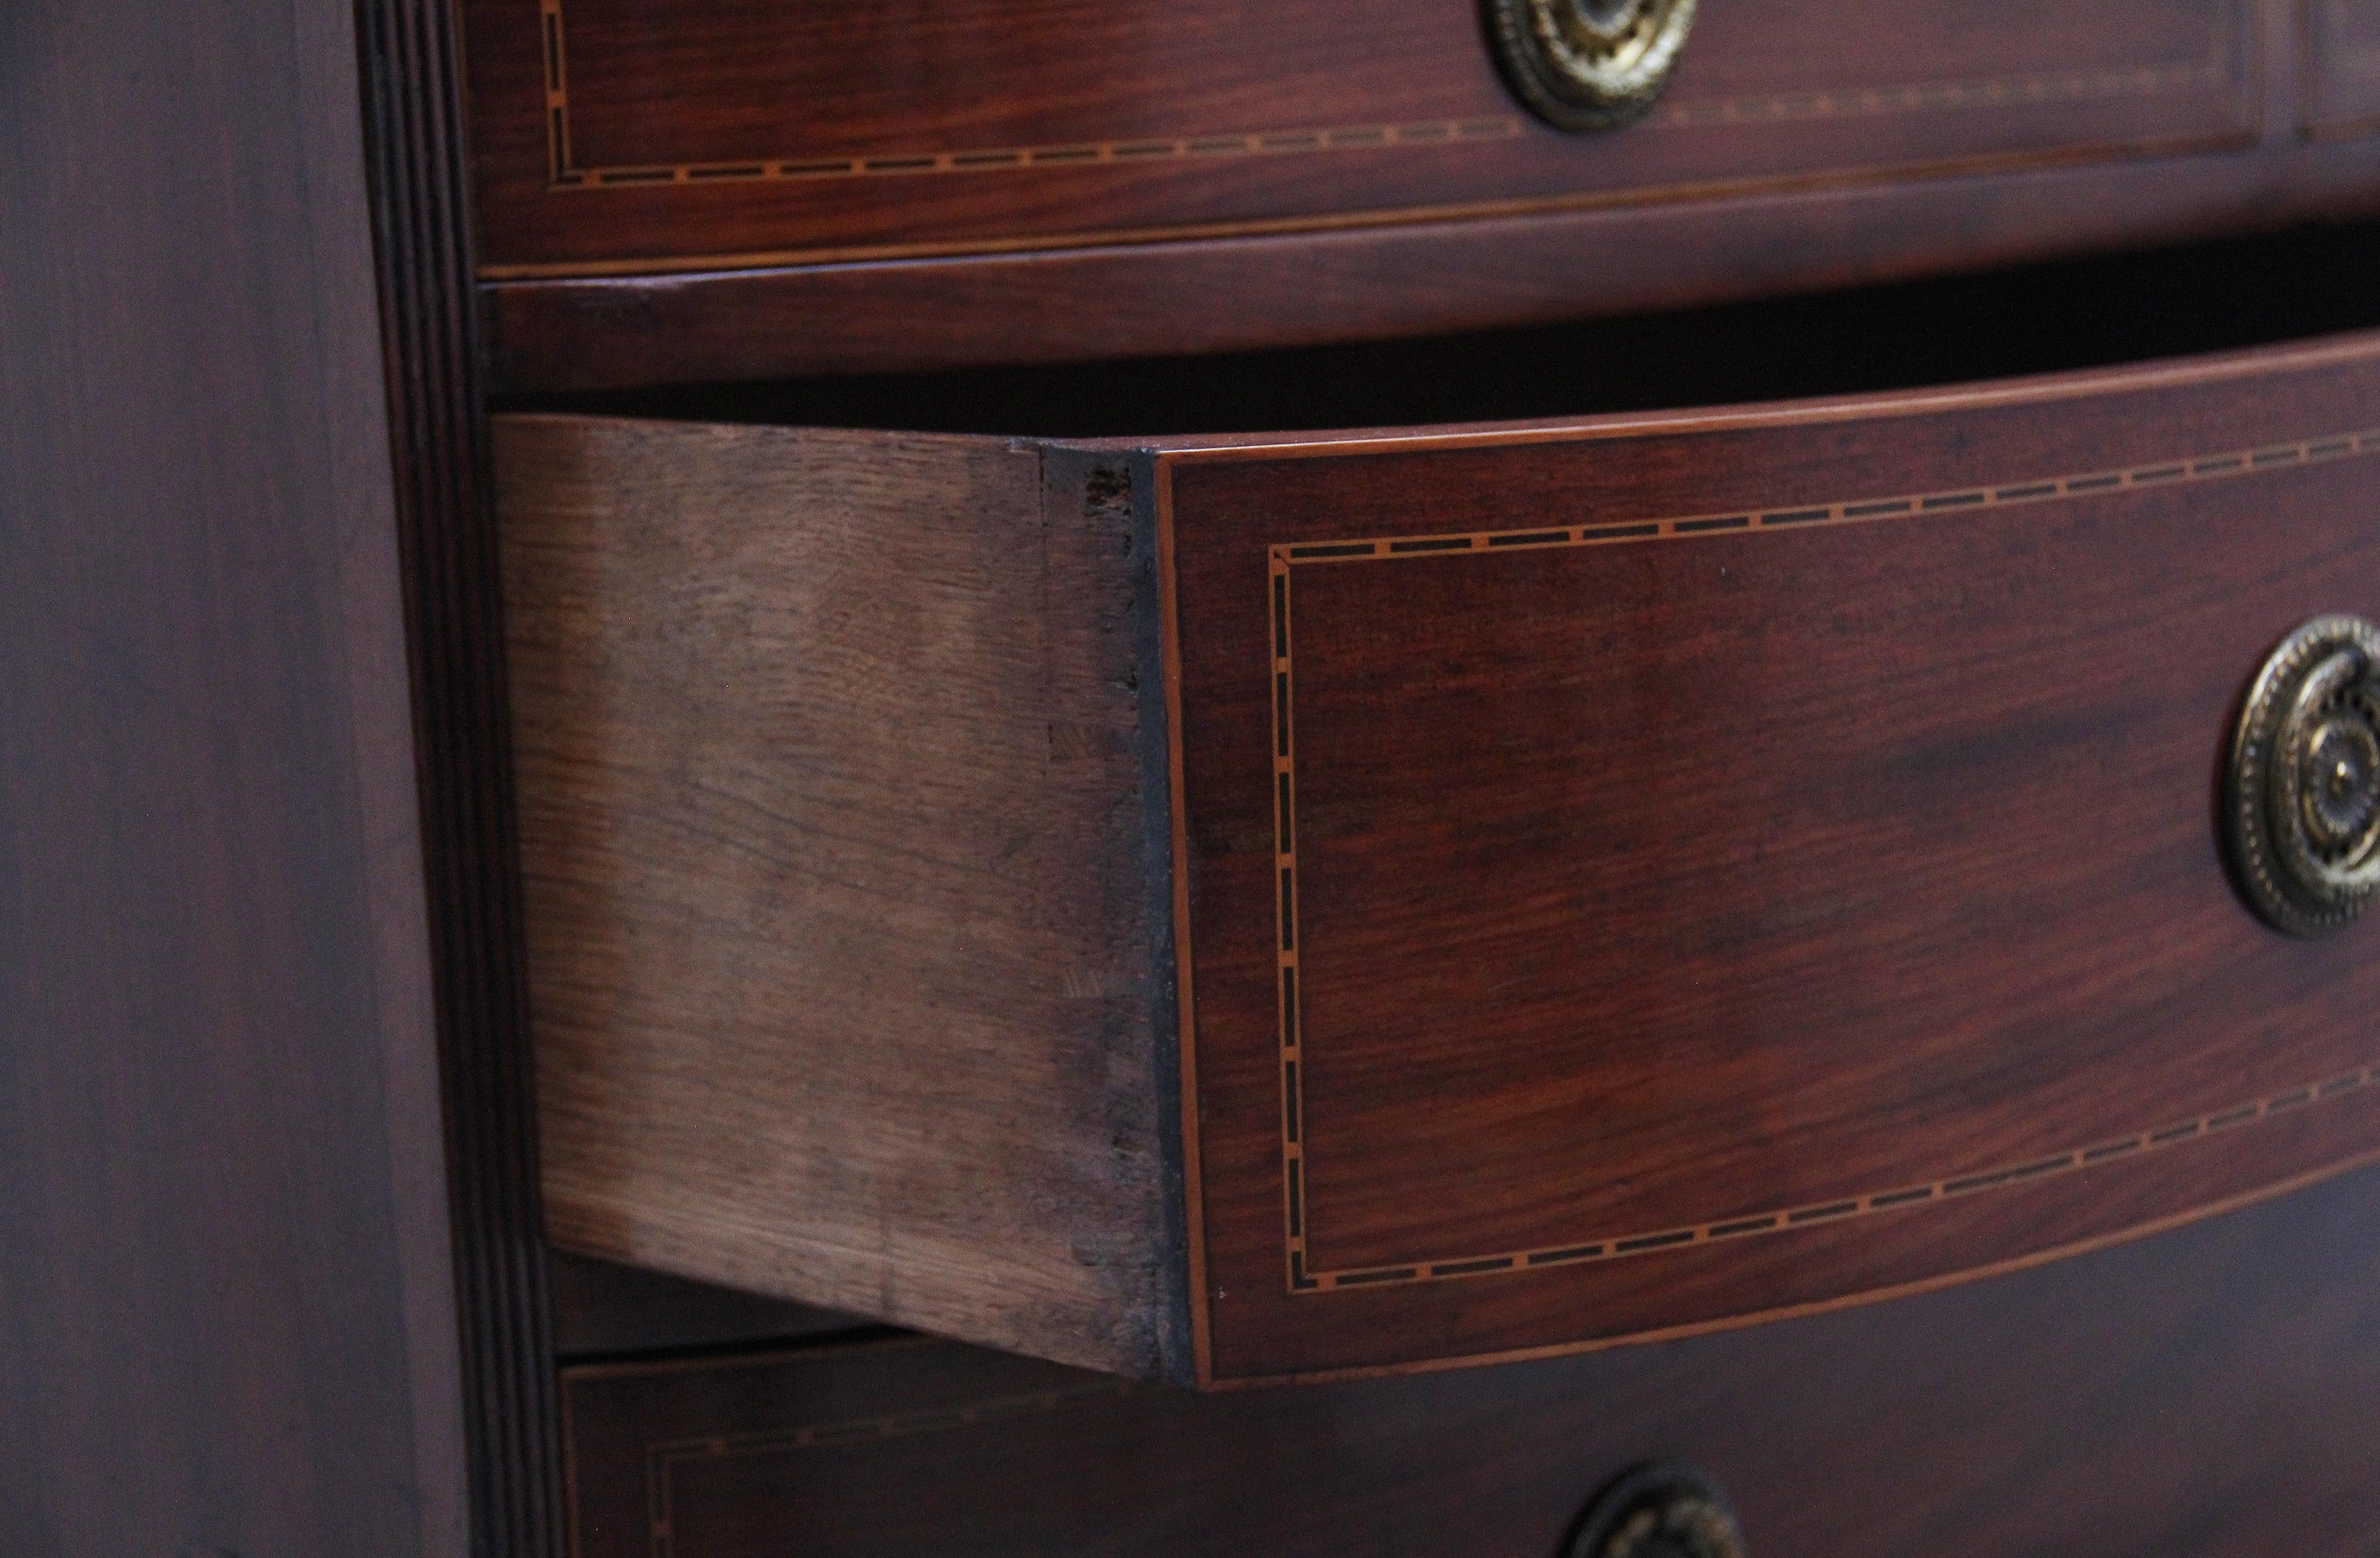 British 19th Century inlaid mahogany bowfront chest of drawers